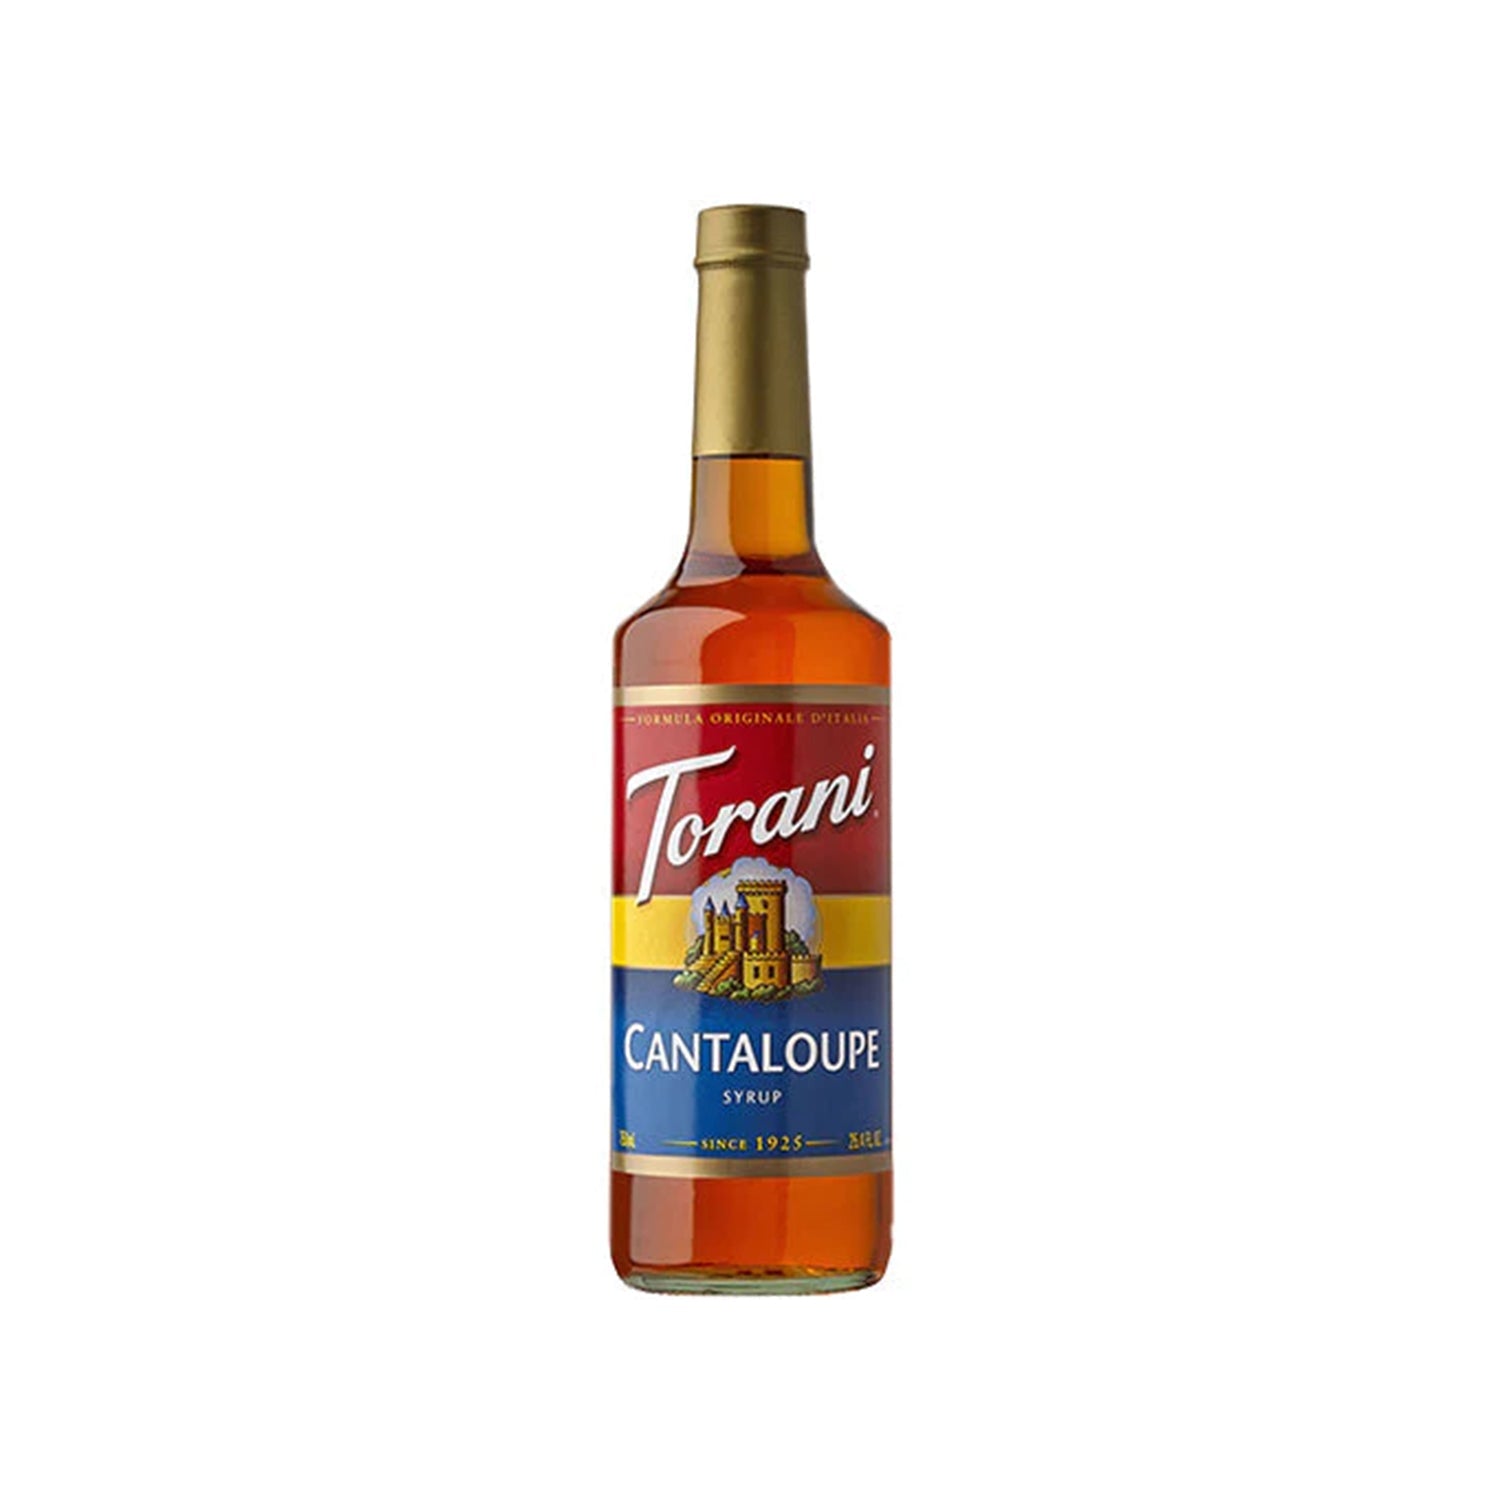 Torani Cantaloupe Syrup - Bottle (750 mL)